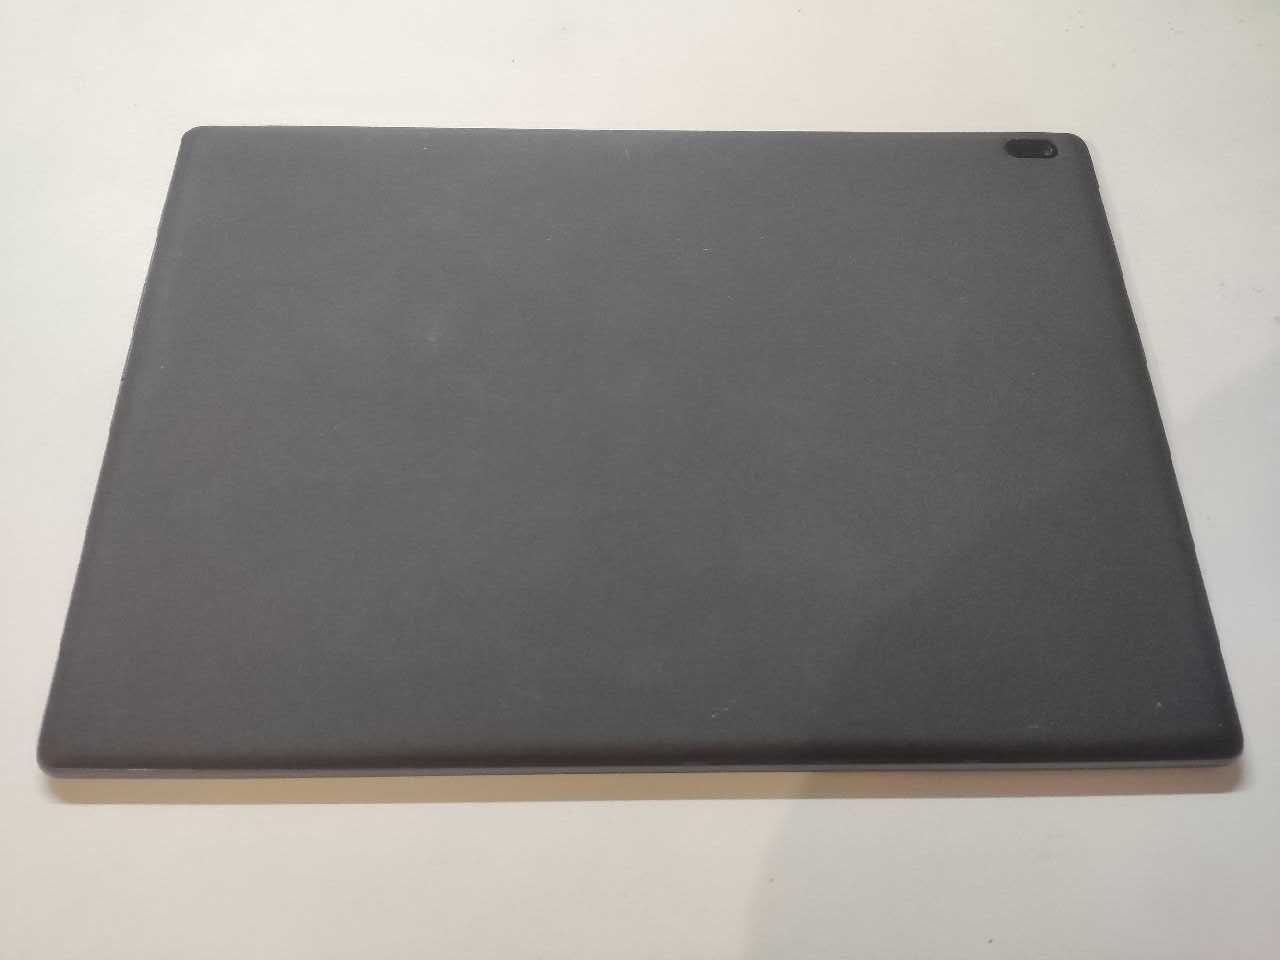 Tablet Lenovo Tab 4 10” TB-X304F 2/16 GB android 8.1